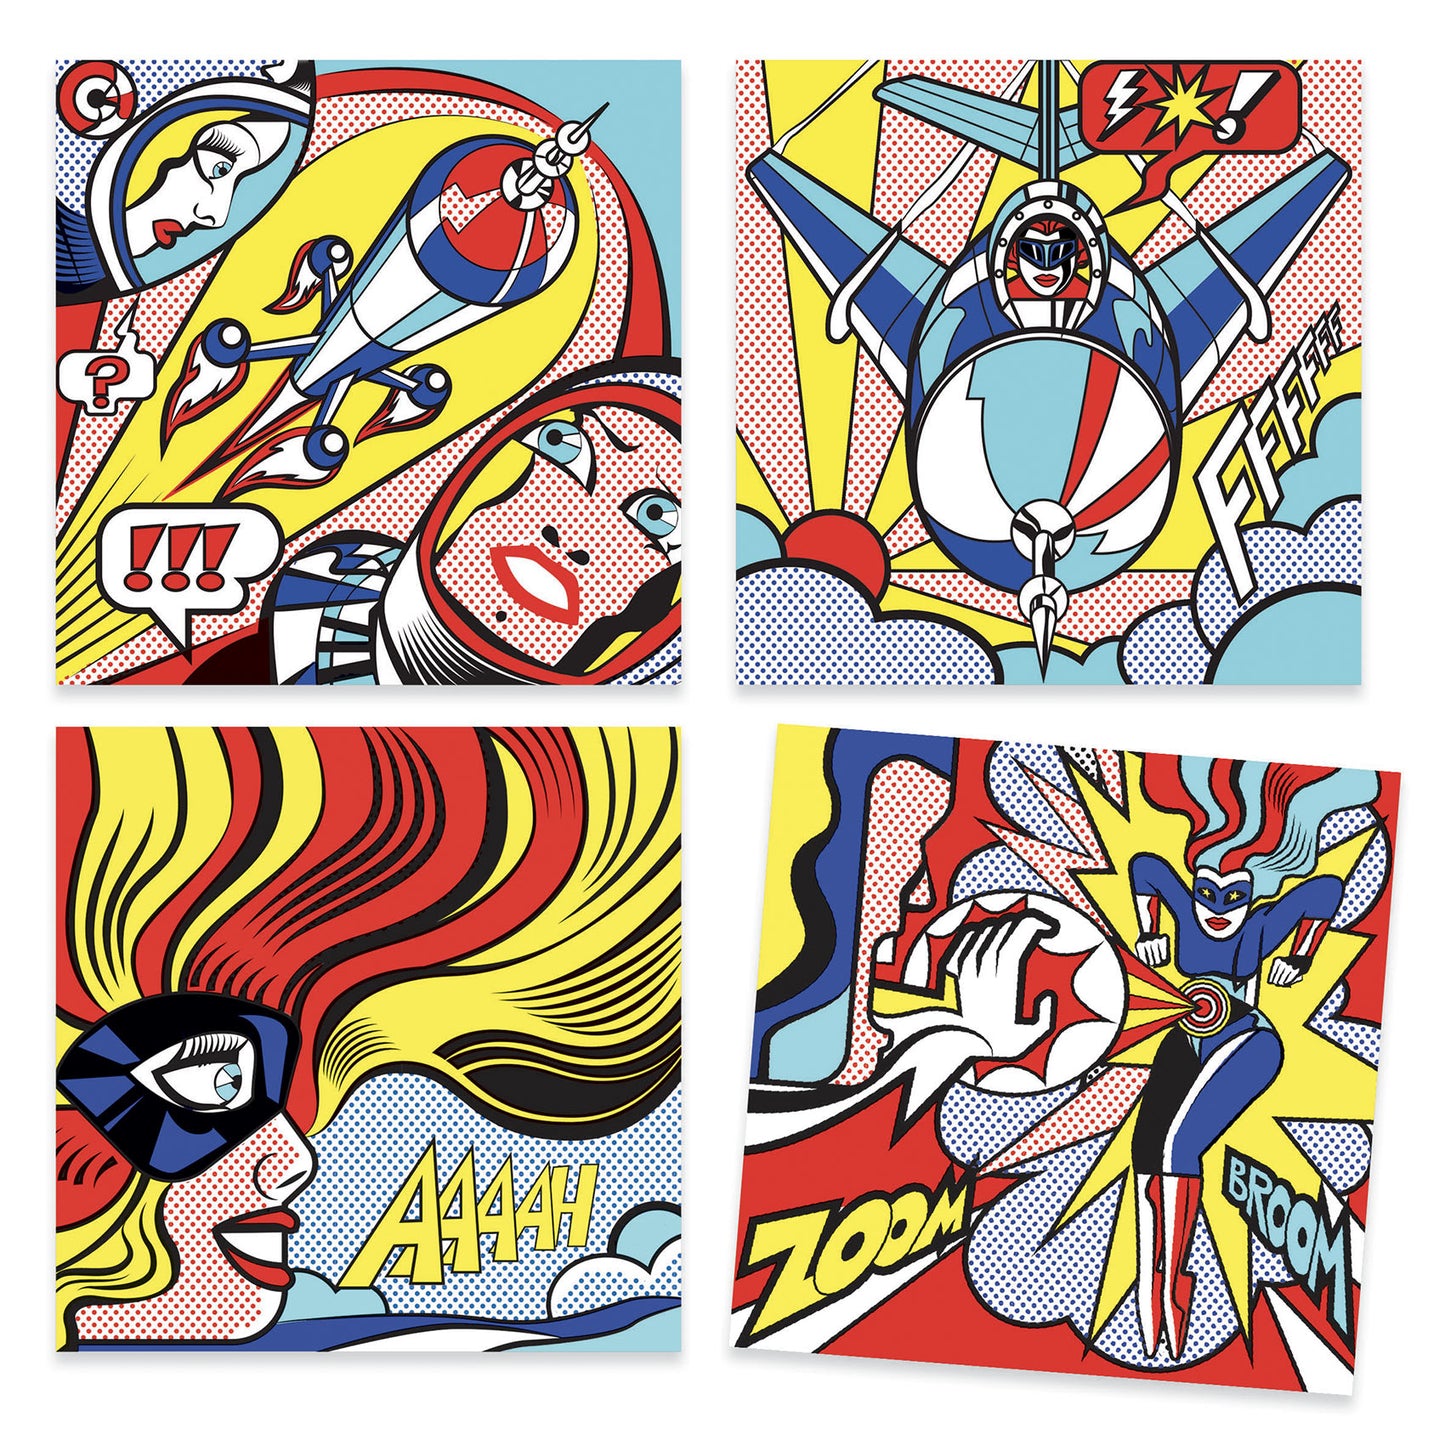 Superheroes - Inspired by Roy Lichtenstein